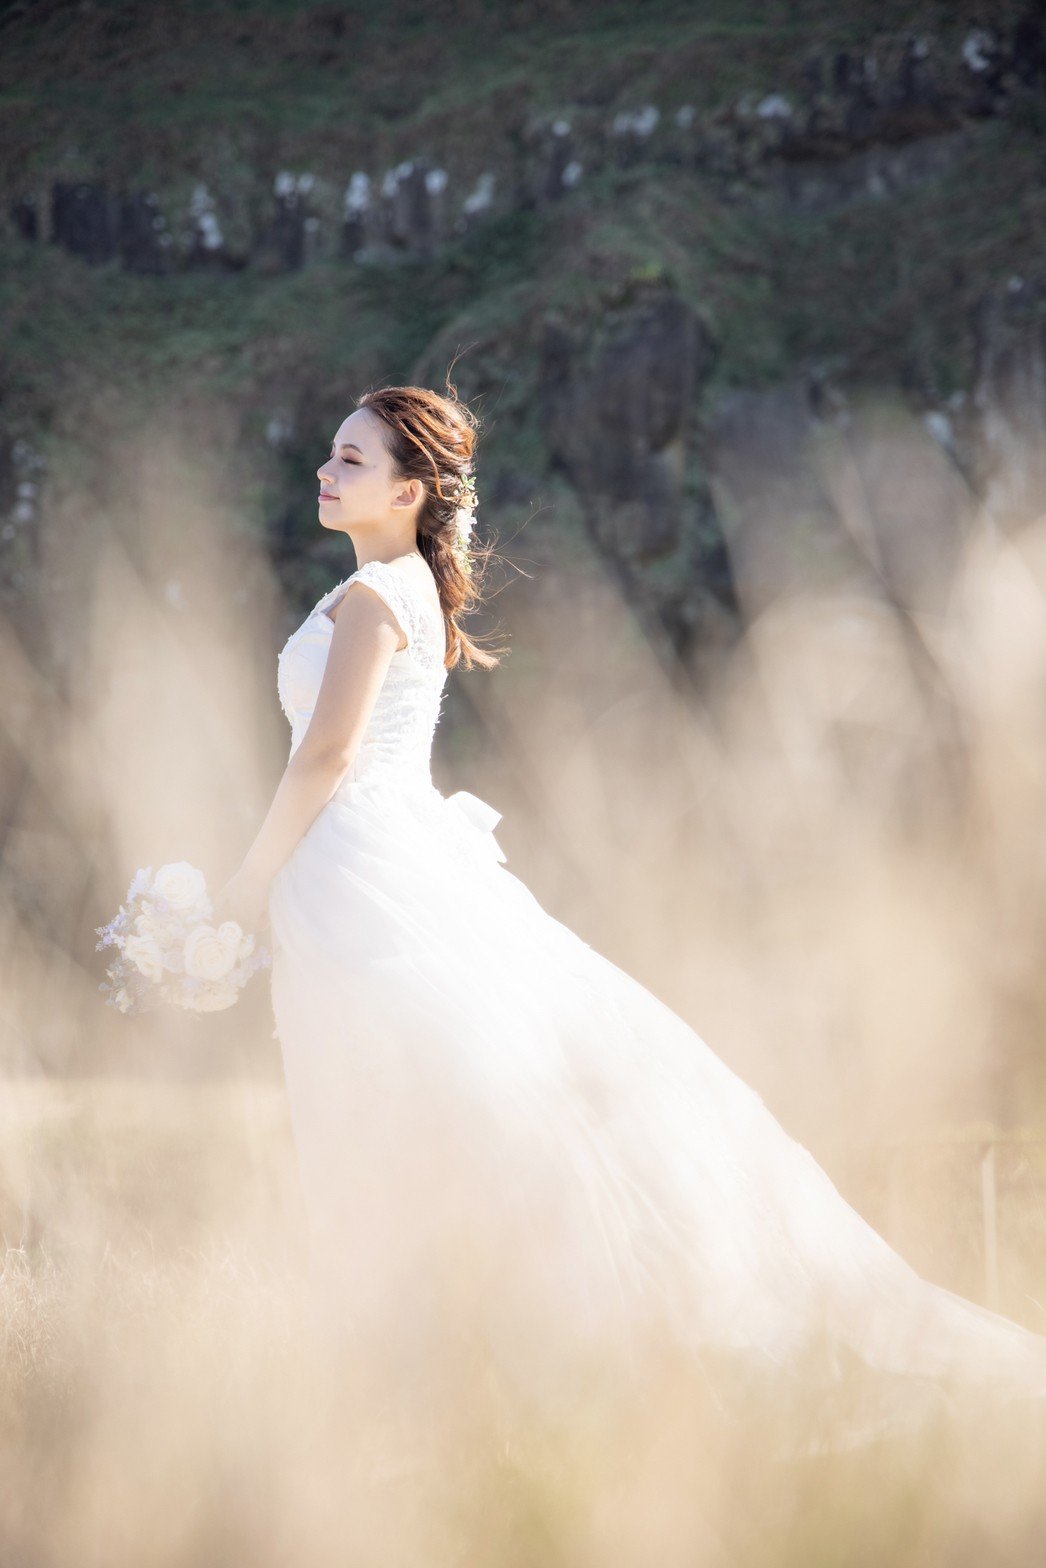 甚麼都不用多說 新娘們就是一定要選---->Amber Wedding 攝影工作室-婚禮廠商評價